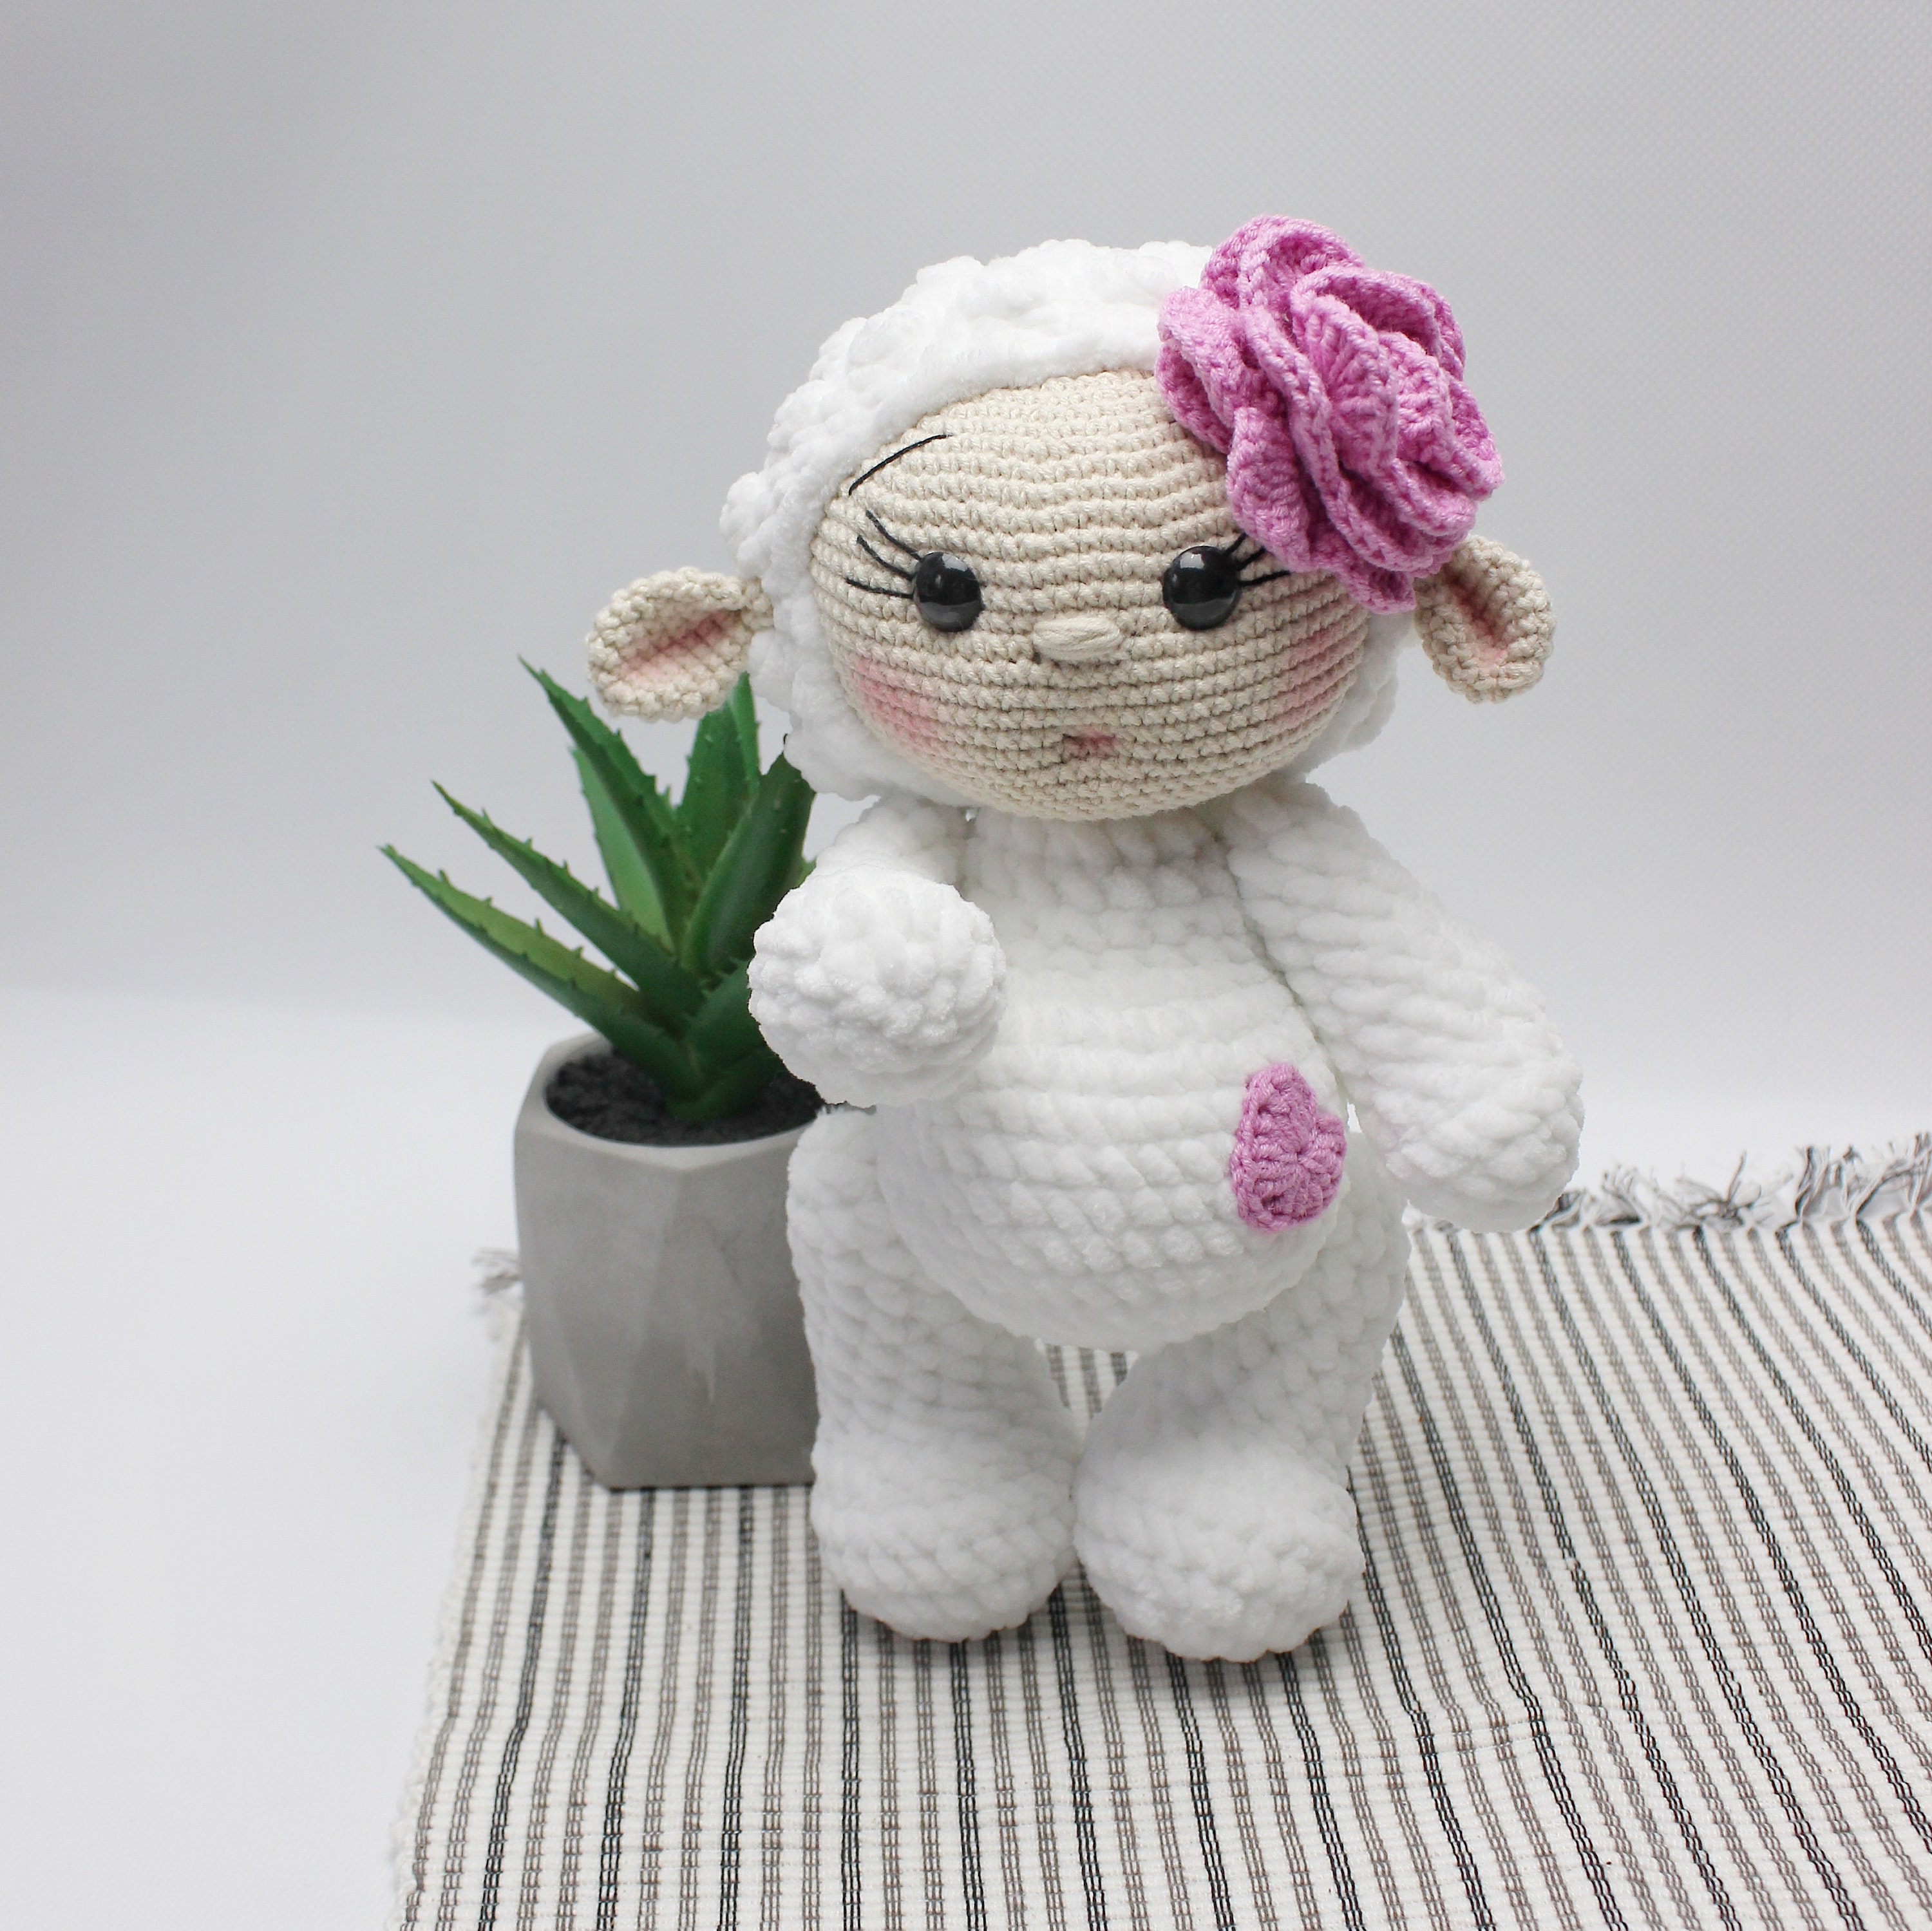 Bunny Crochet Kit. Crochet Kit for Beginners. Crochet Kit Beginner